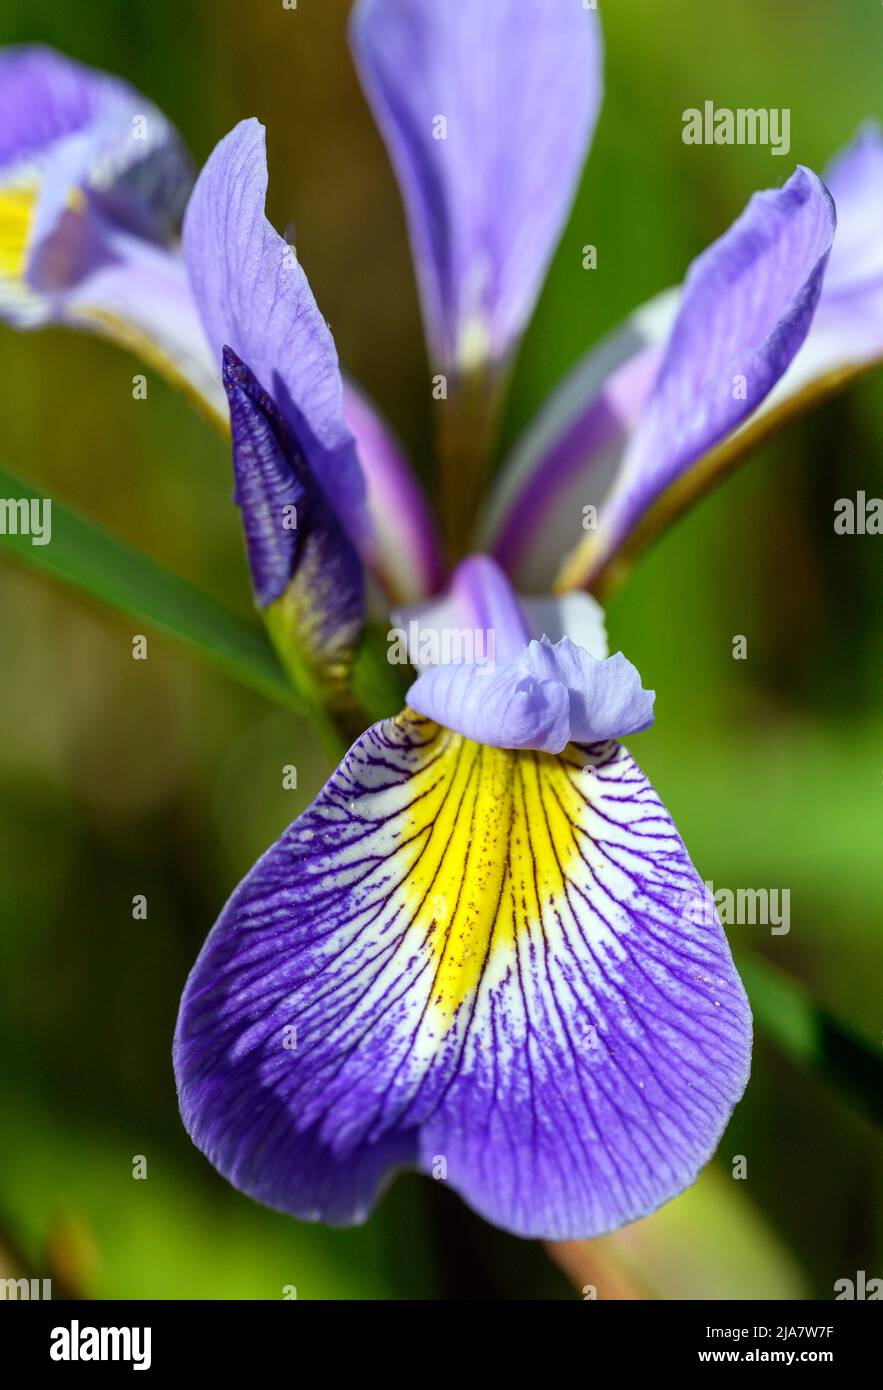 Iris aux pétales violets, blancs et jaunes. Macro gros plan montrant les détails fins du pétale. Fleur d'iris colorée vue dans le Kent, Royaume-Uni. Banque D'Images